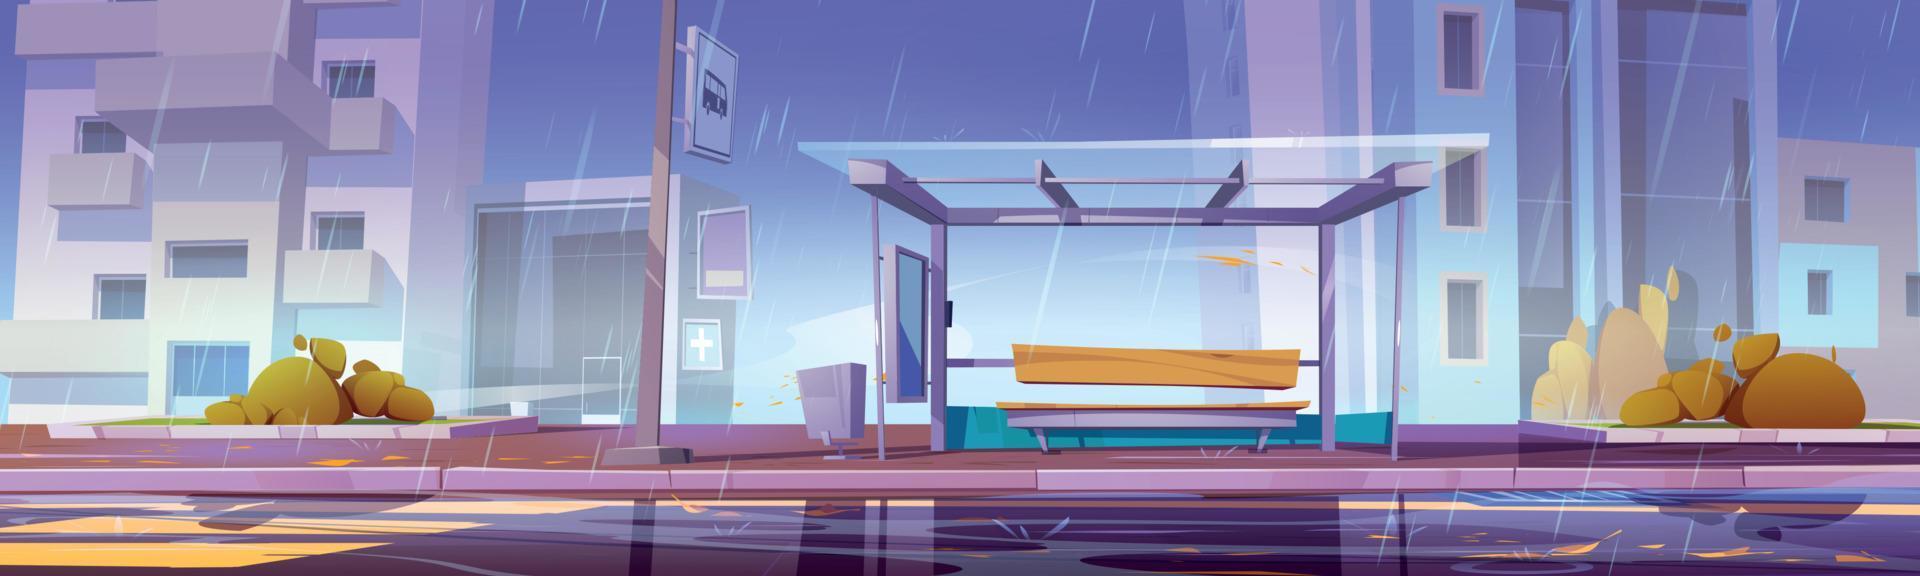 stad bus hou op Bij regenachtig het weer, forens station vector